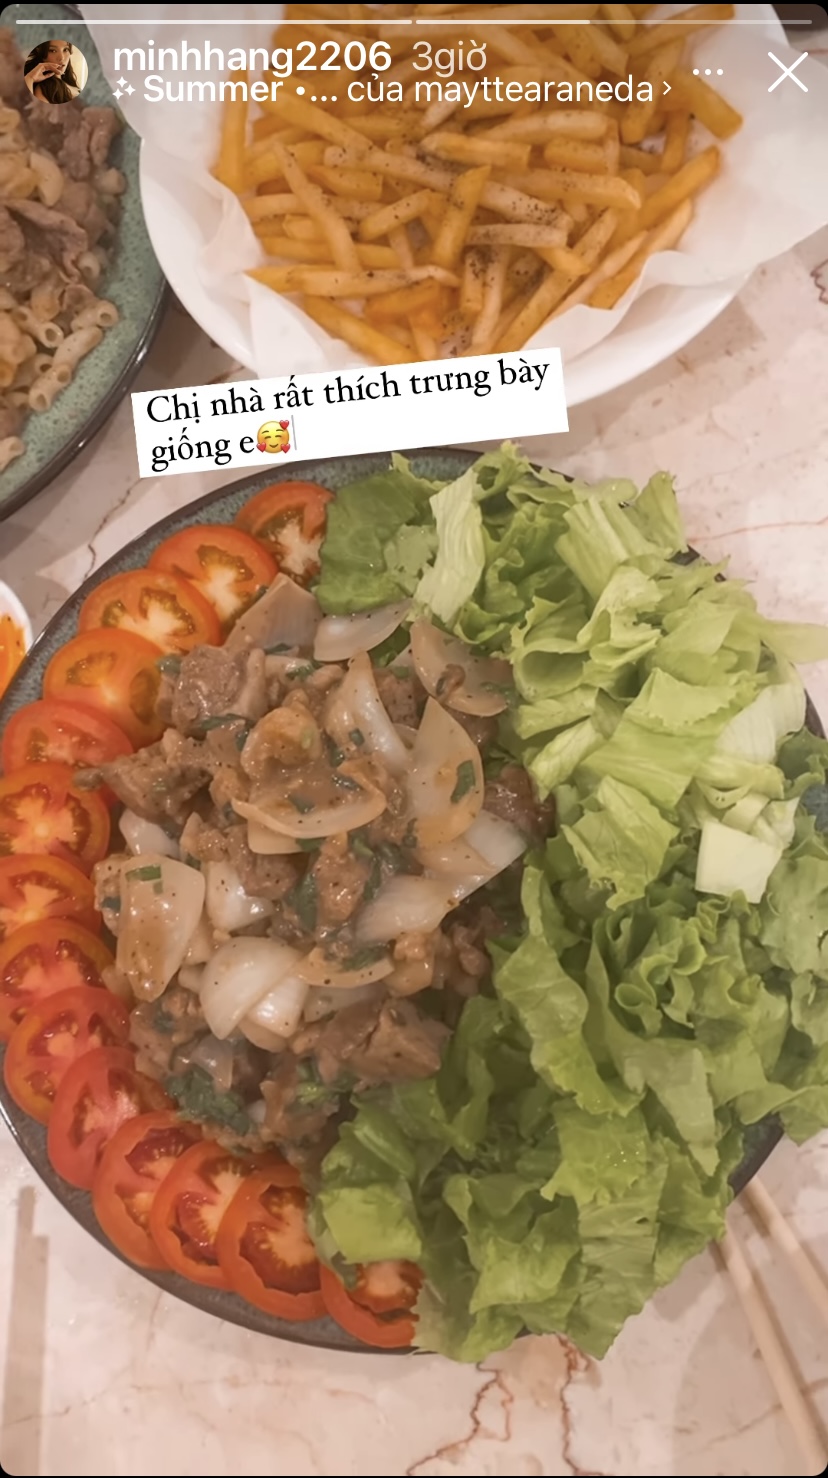 Cũng giống như nhiều chị em yêu bếp khác, Minh Hằng cũng phải trình bày thật đẹp những món ăn vừa nấu xong để 'khoe' với mọi người.